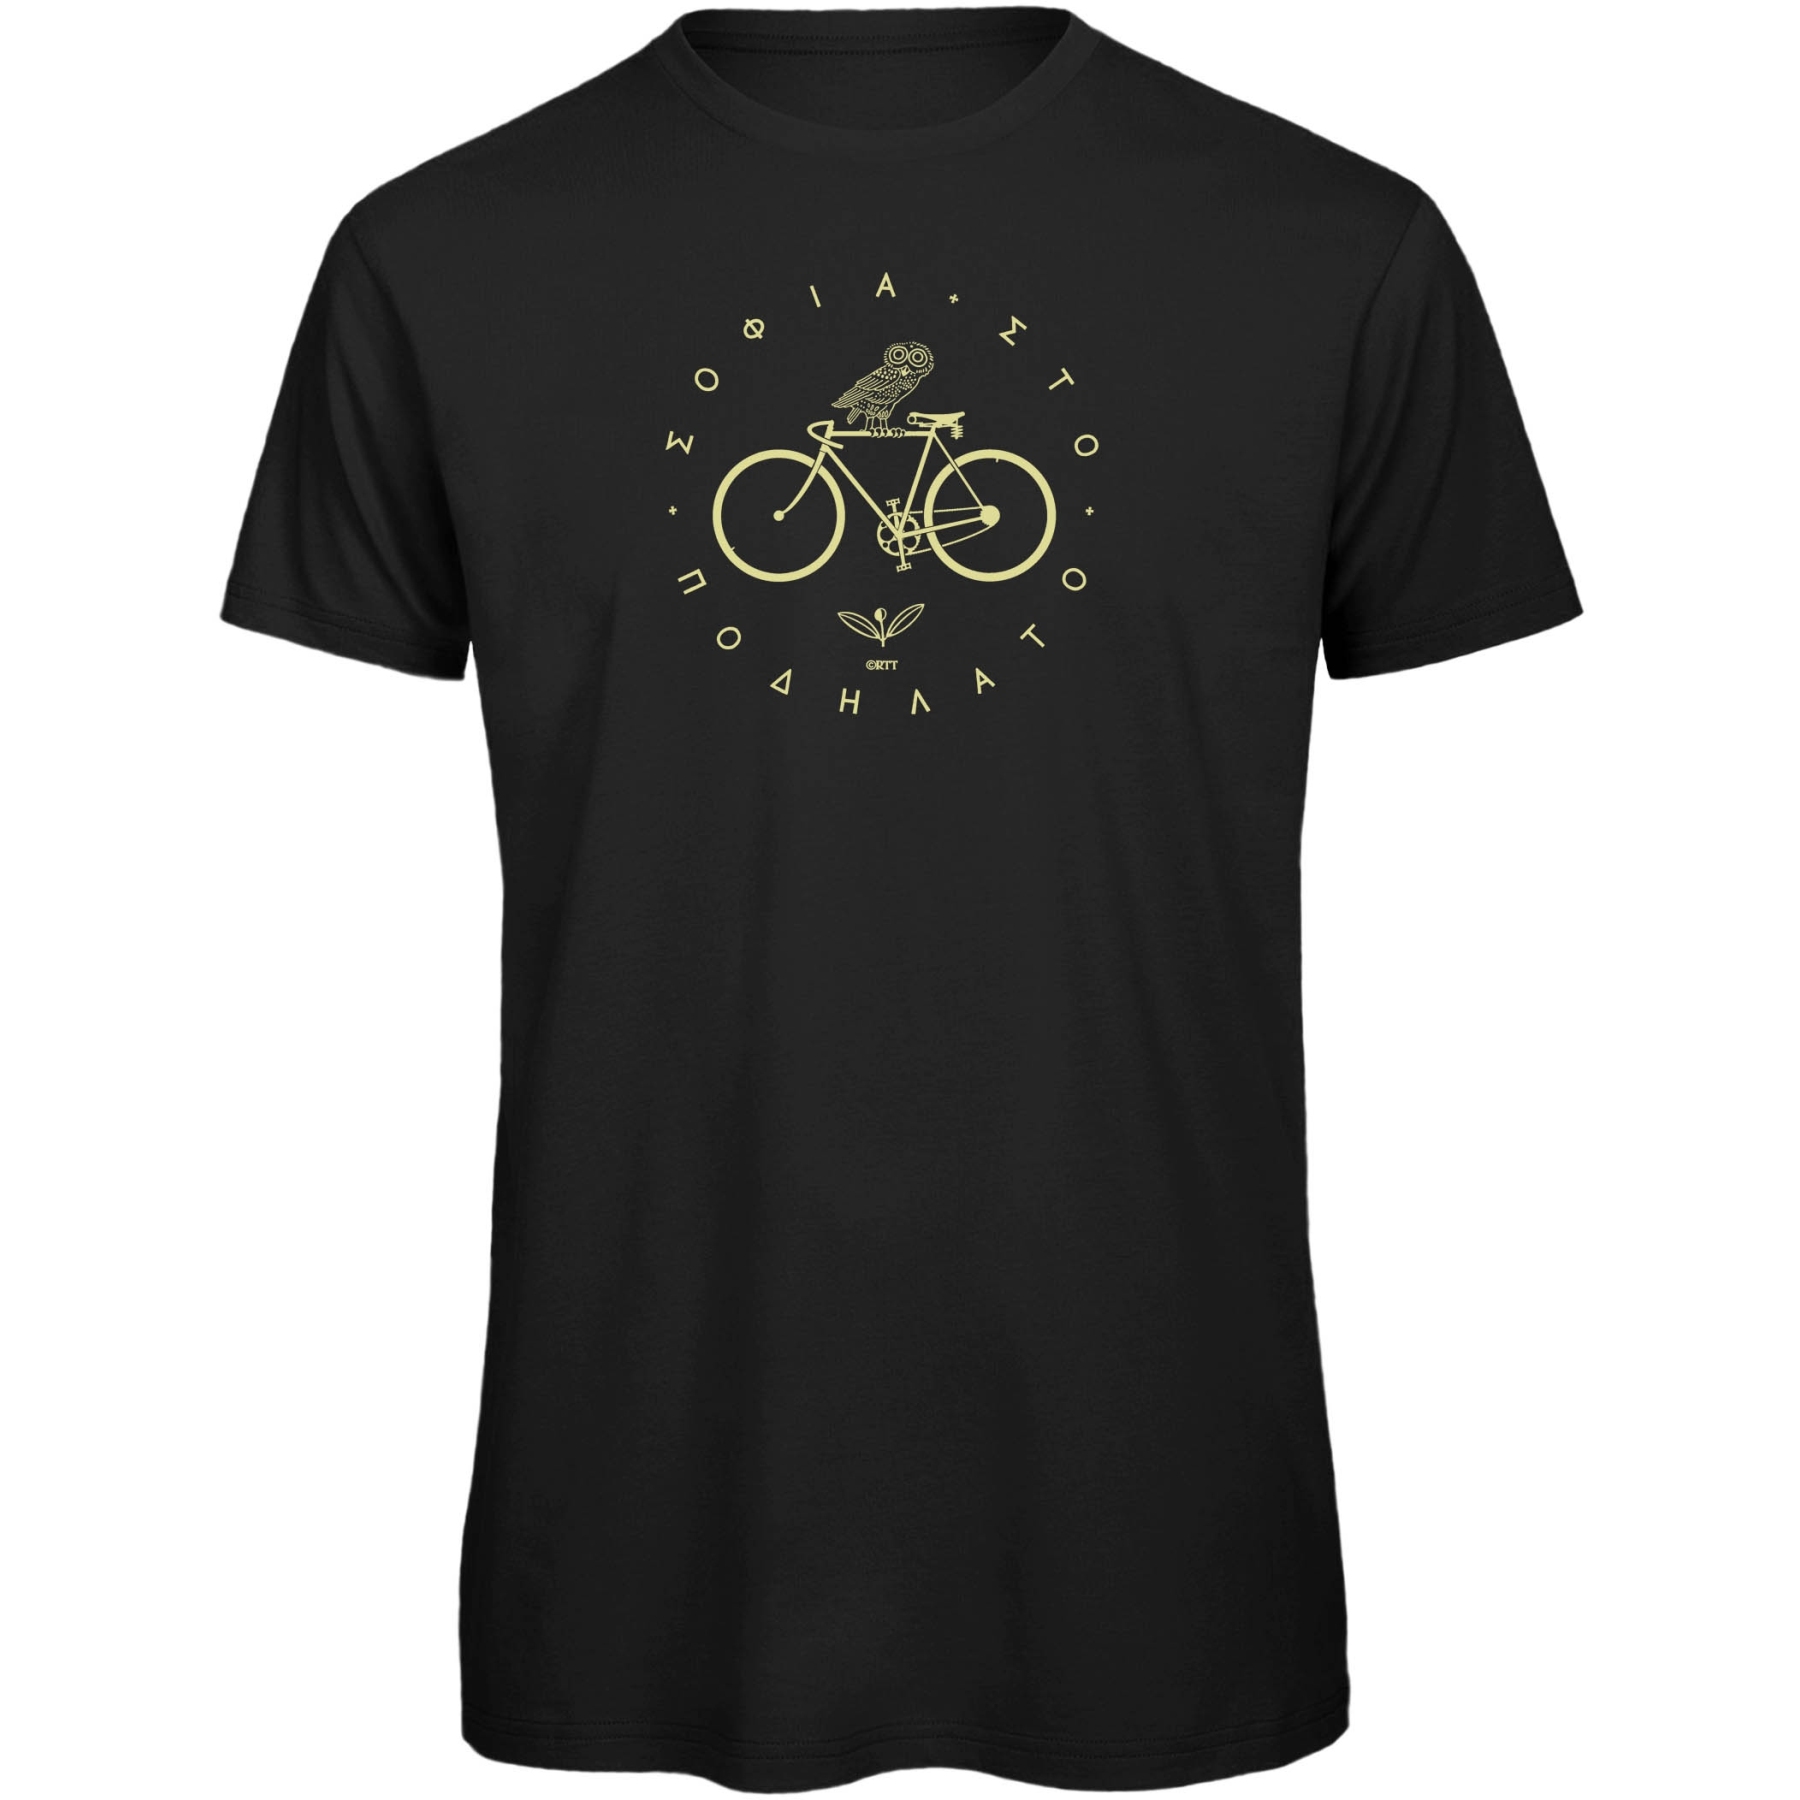 Produktbild von RTTshirts Fahrrad T-Shirt Minerva - schwarz